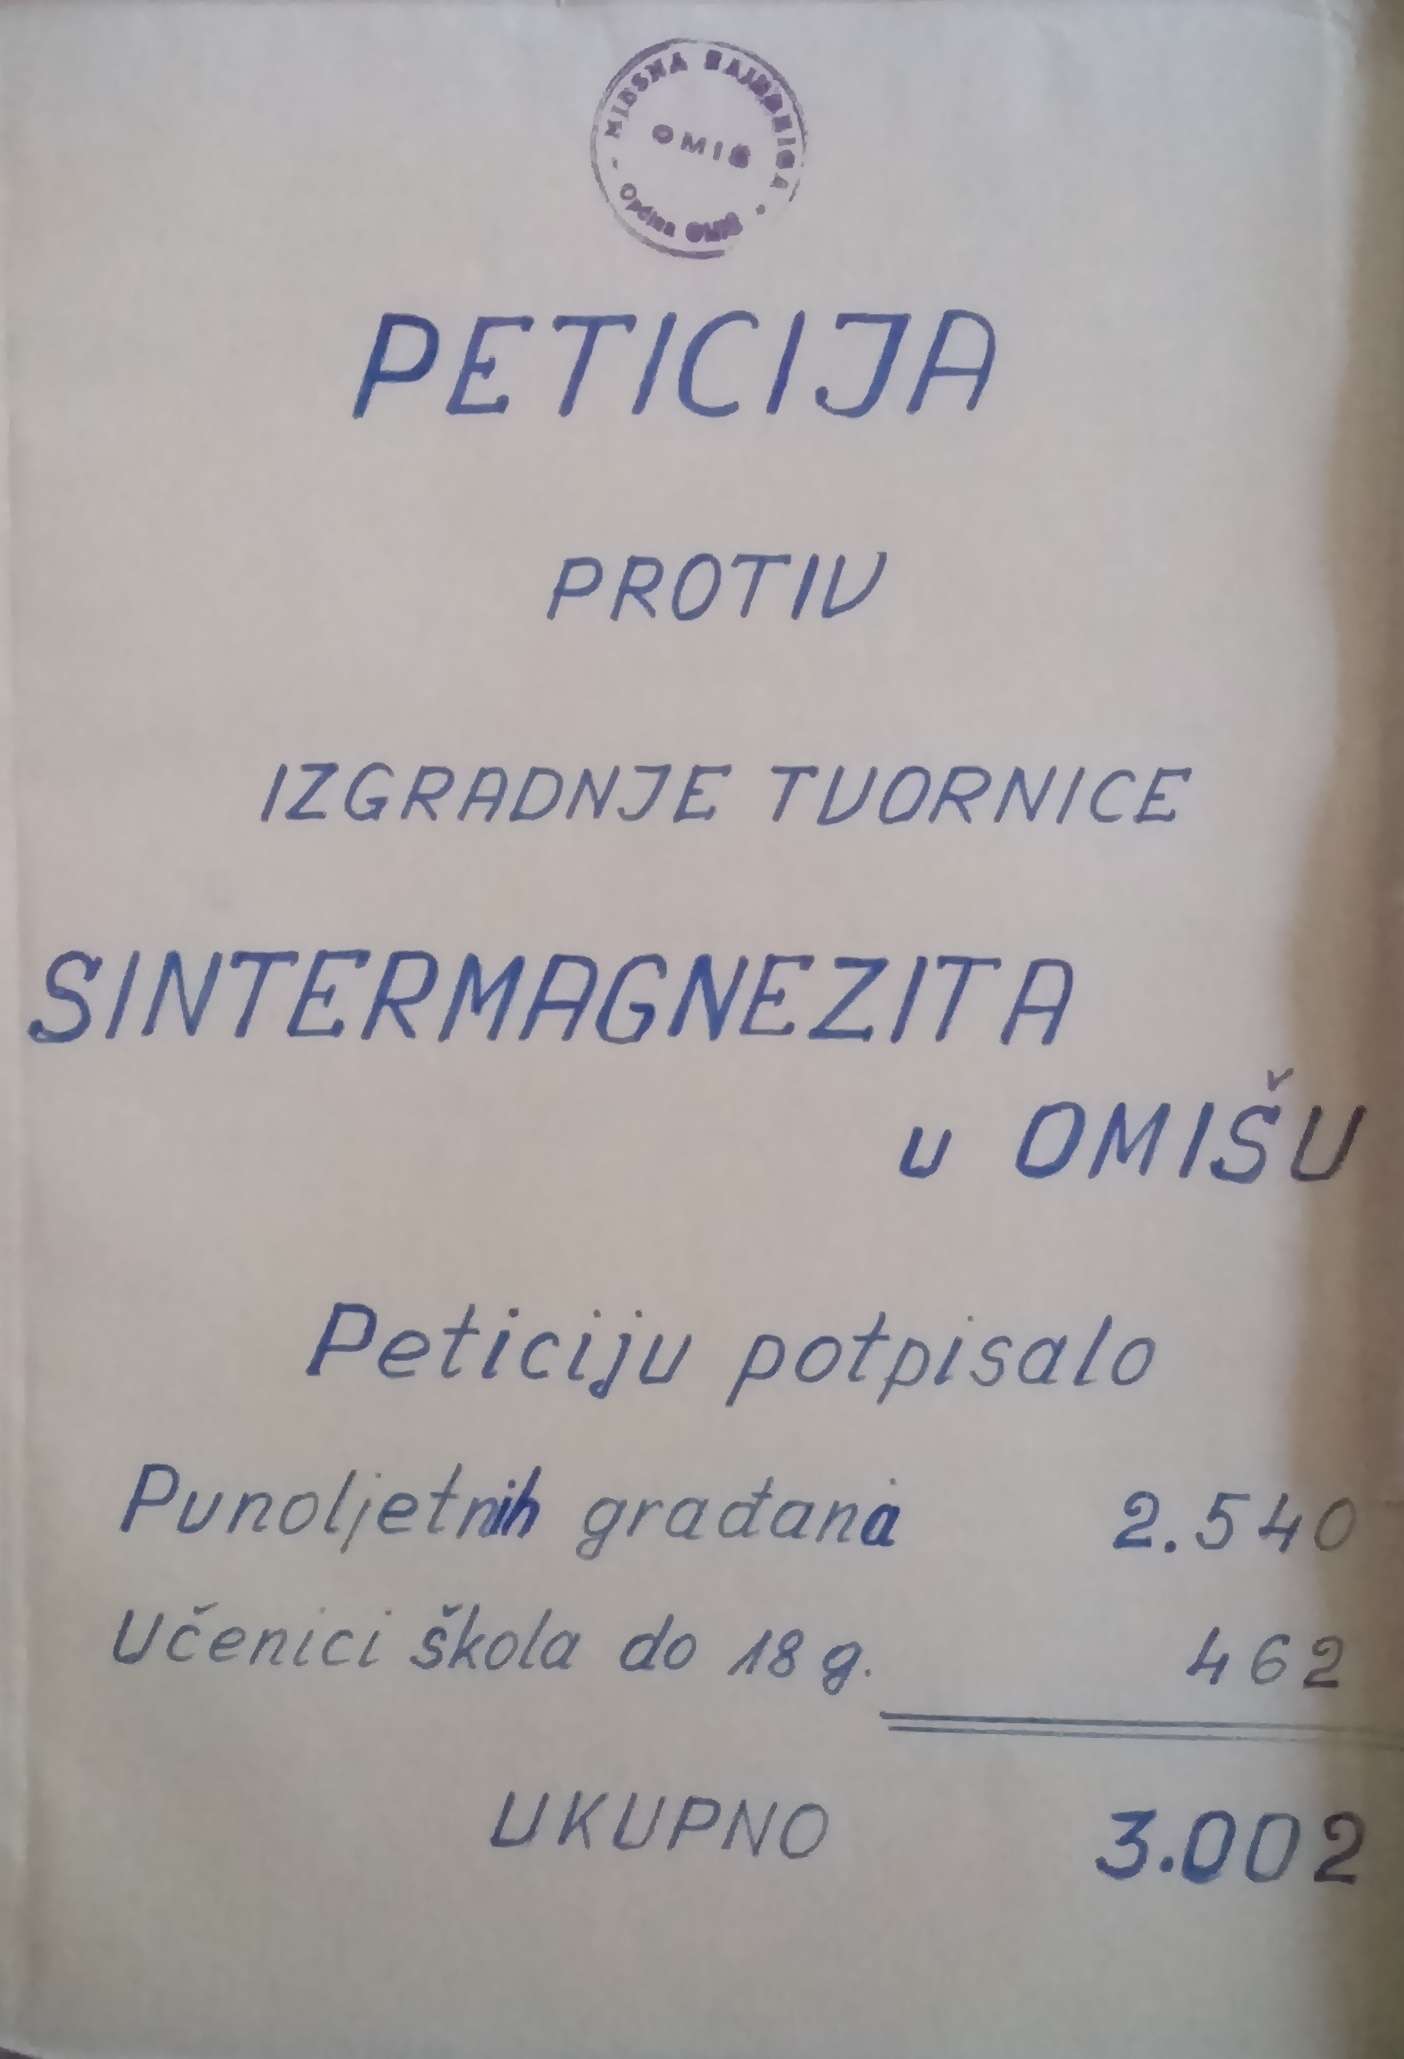 Peticija protiv izgradnje tvornice sintermagnezita u Omišu poslana Saboru Socijalističke Republike Hrvatske. 12. travnja 1979. Arhivski dokument.